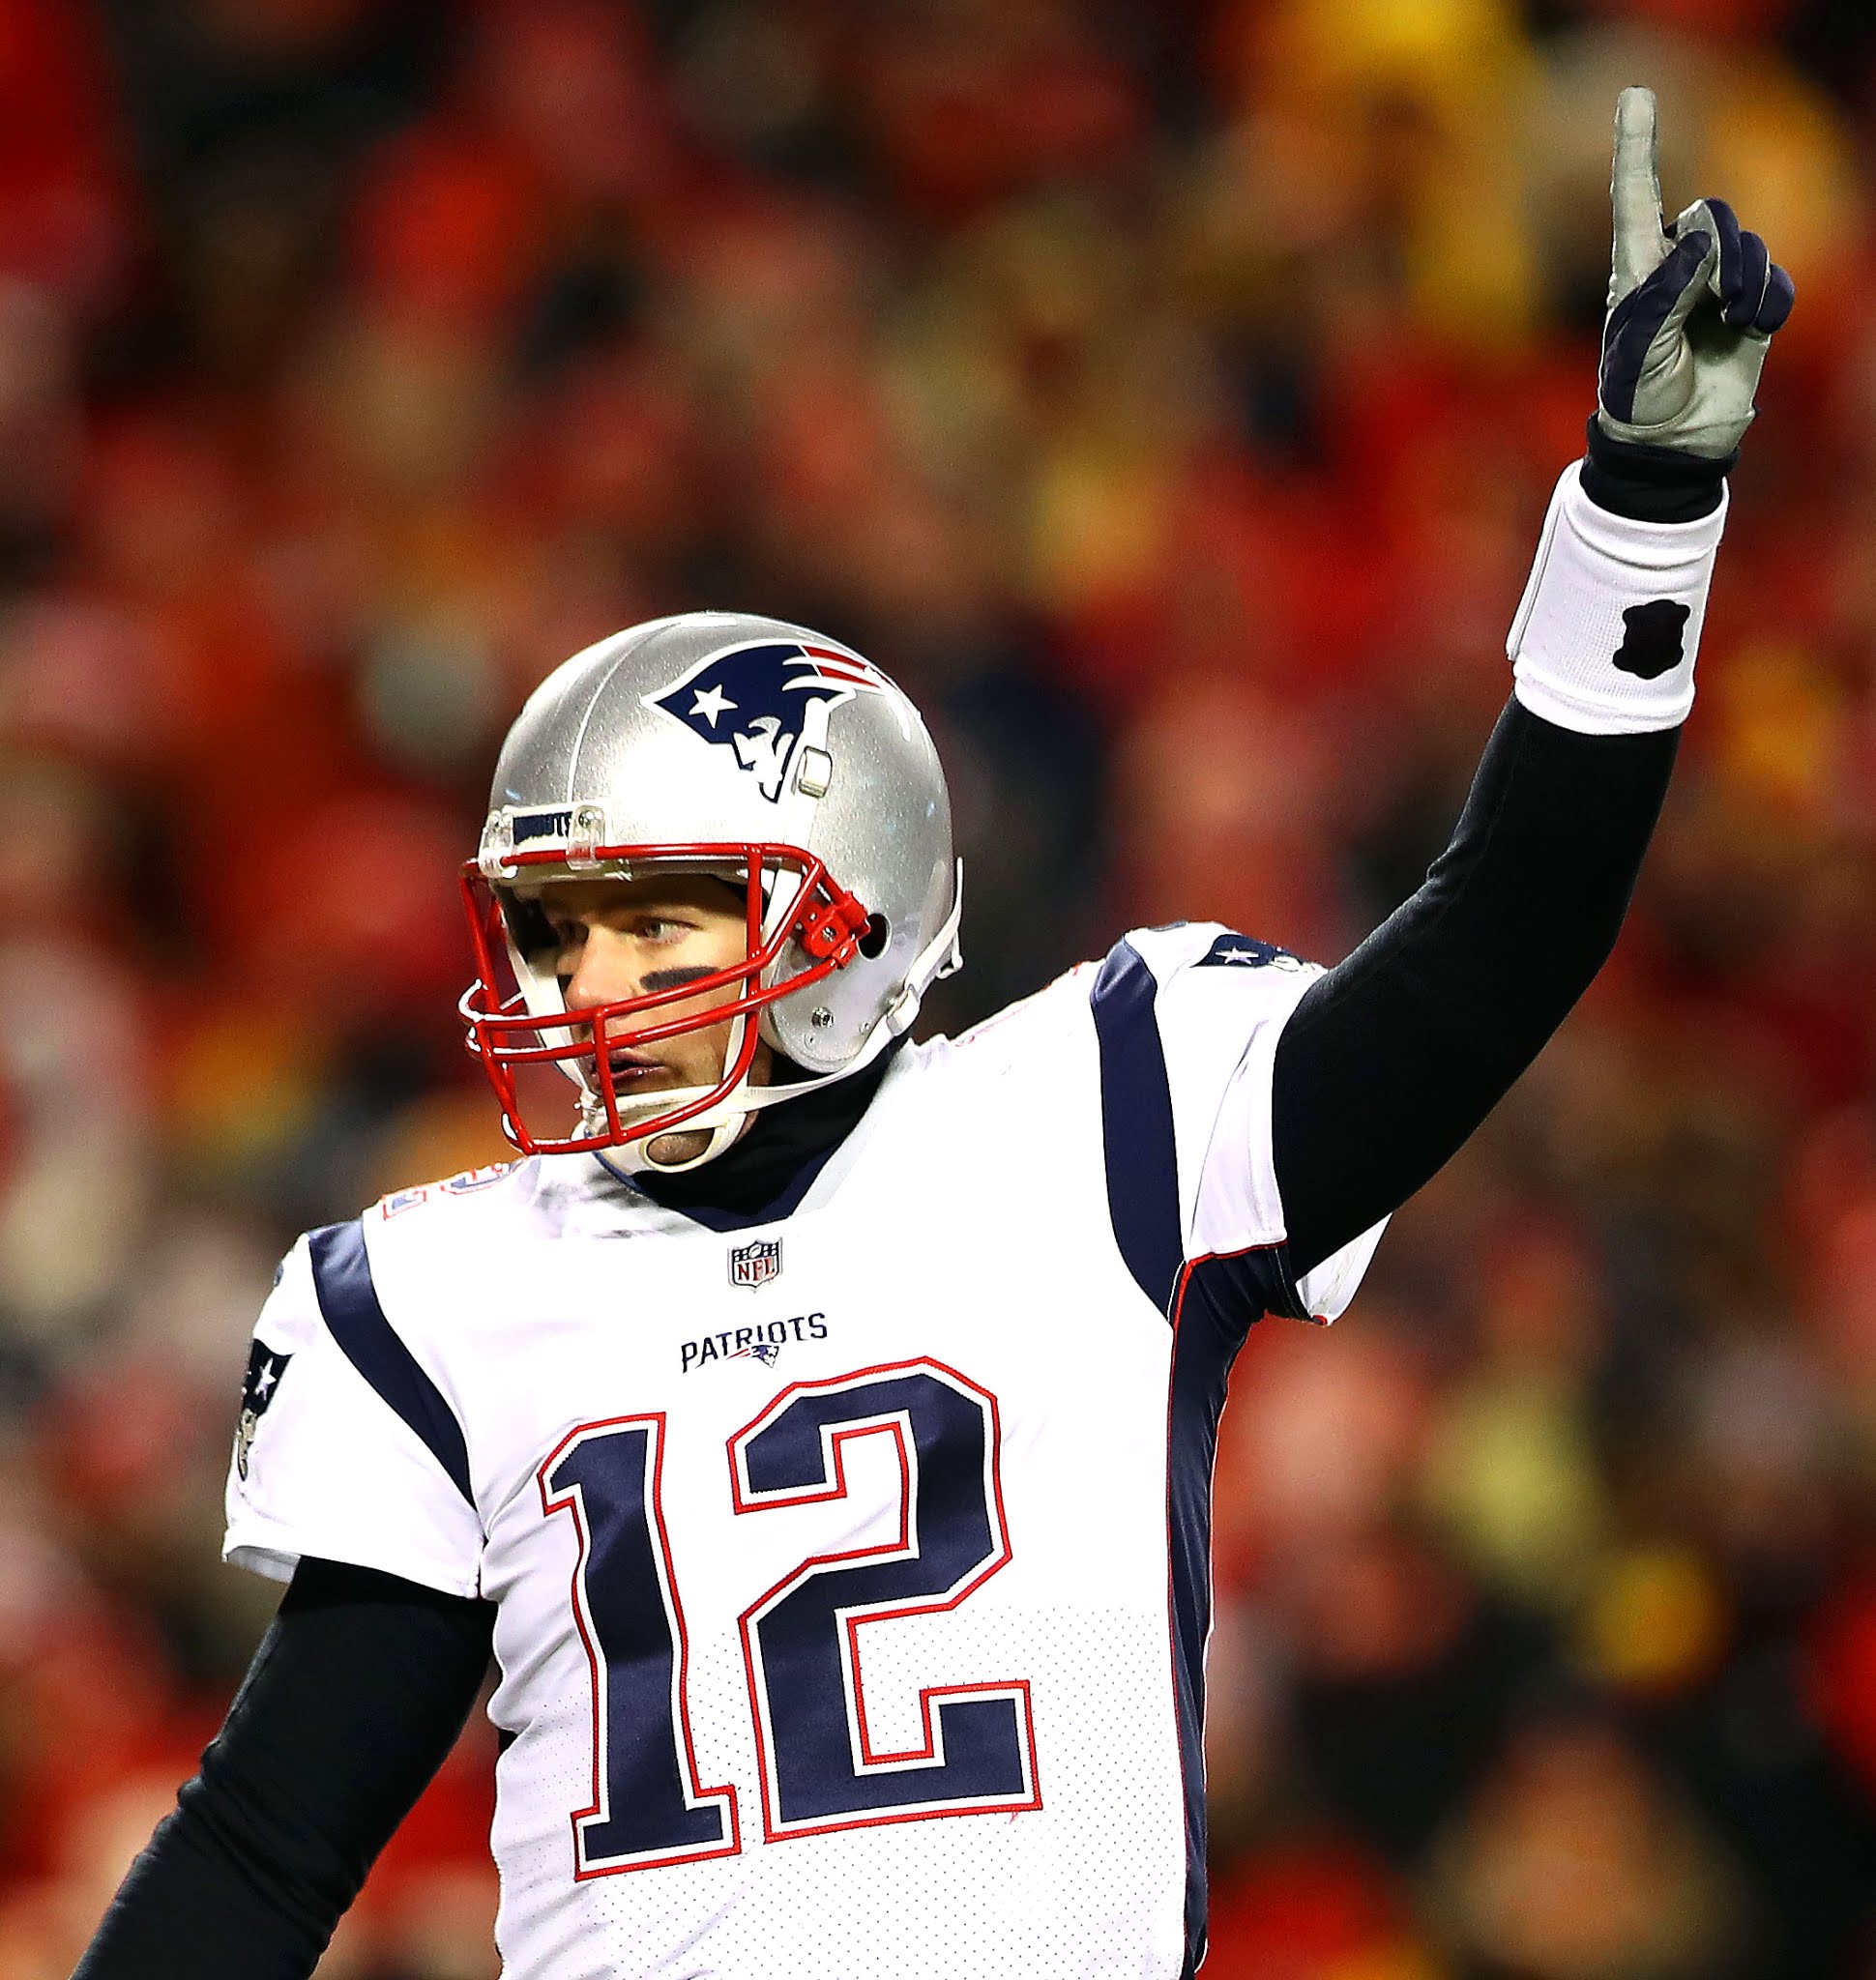 Welcome to : Tom Brady—The Greatest Quarterback